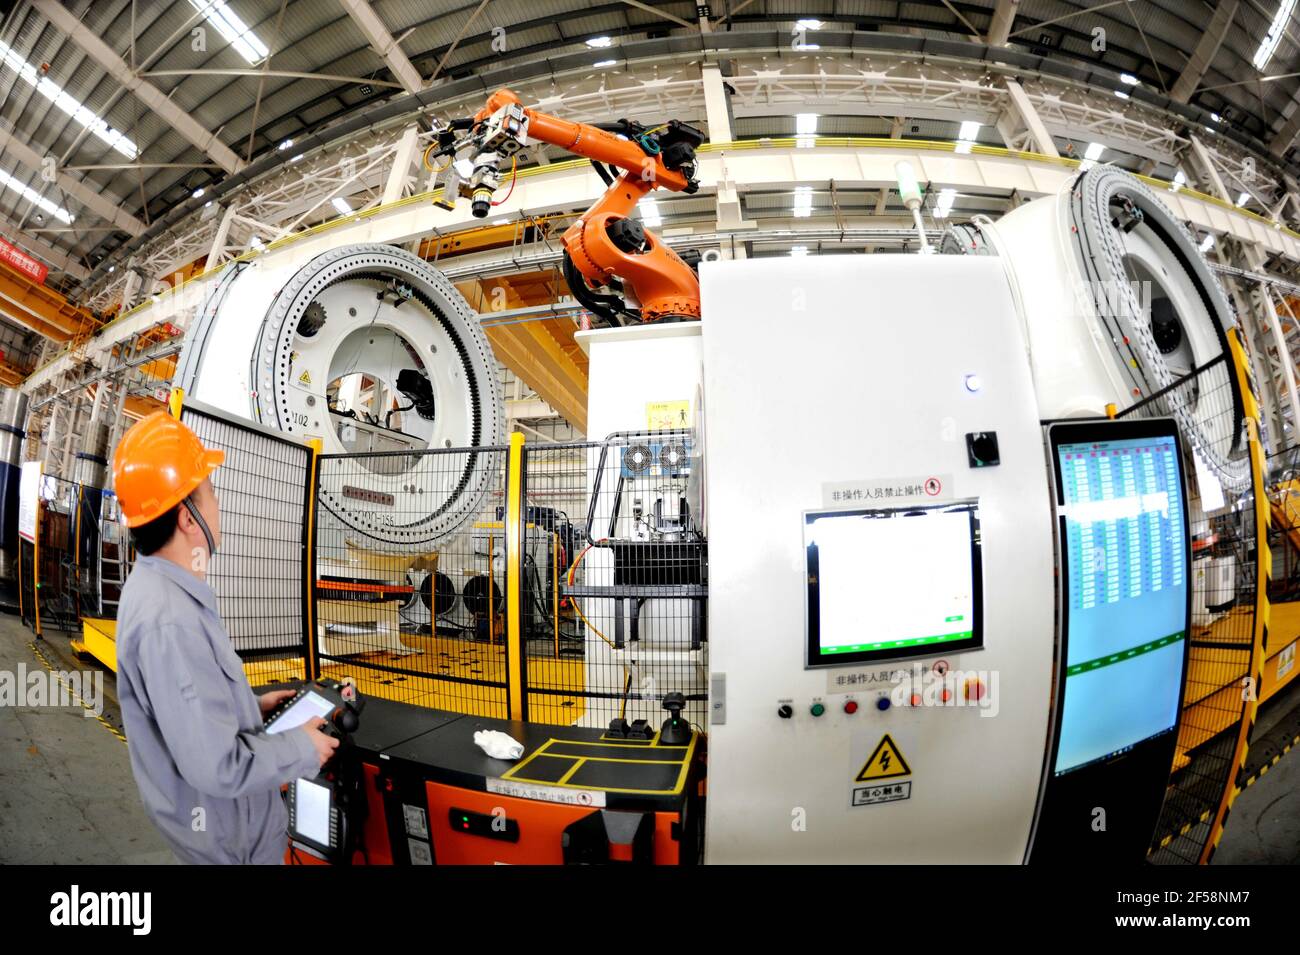 LIANYUNGANG, CHINA - 25 DE MARZO de 2021 - un trabajador realiza una operación de producción en un taller de producción de la Tecnología de Energía Unida (Lianyungang) Co., Ltd en Lianyungang, provincia de Jiangsu, China, 25 de marzo, 2021. National United Power Technology (Lianyungang) Co., Ltd. Continúa llevando a cabo mejoras e innovación de productos e invierte en proyectos de I+D, fabricación, ventas y puesta en marcha de turbinas eólicas marinas 8-15MW y turbinas eólicas grandes terrestres 3.X-5.X. Hasta ahora, la producción ha aumentado un 92% en comparación con el mismo período del año pasado. (Foto de Wang Chun / Costfoto/Sipa USA) Foto de stock